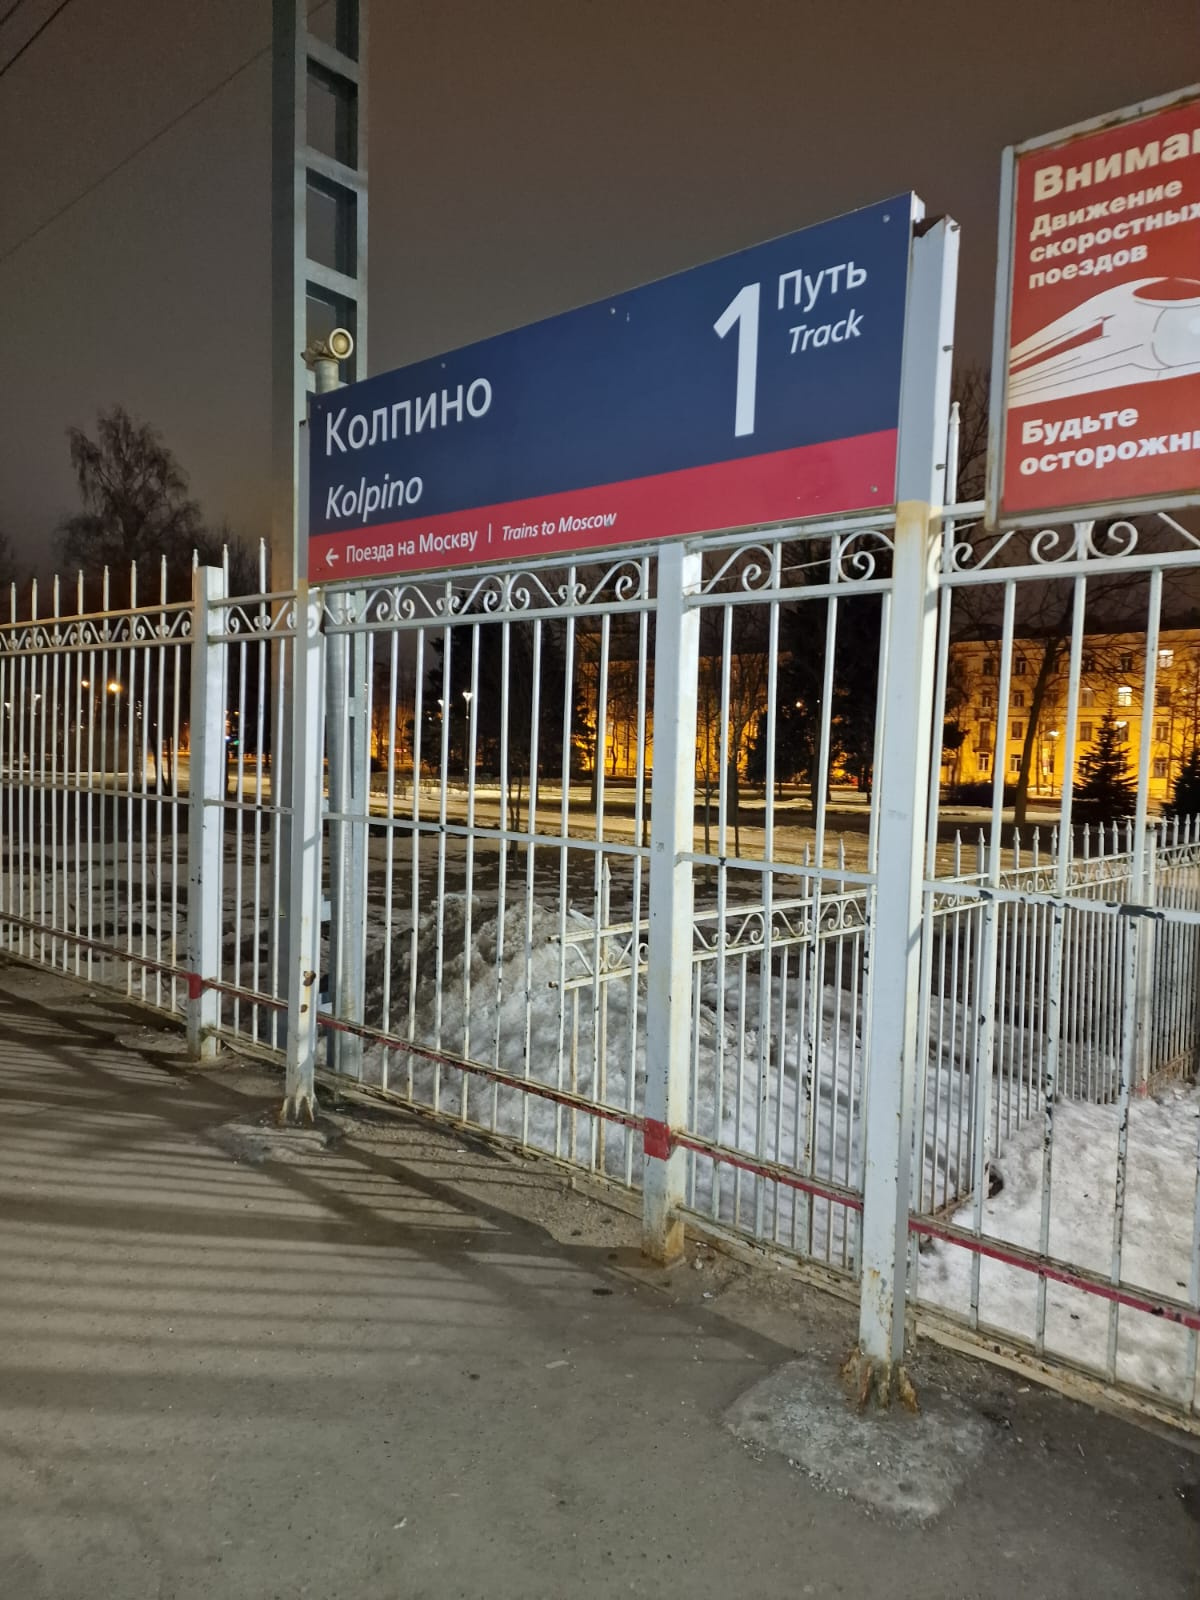 Человек попал под поезд, ехавший в Москву, на путях в Колпино. Громкие гудки не помогли